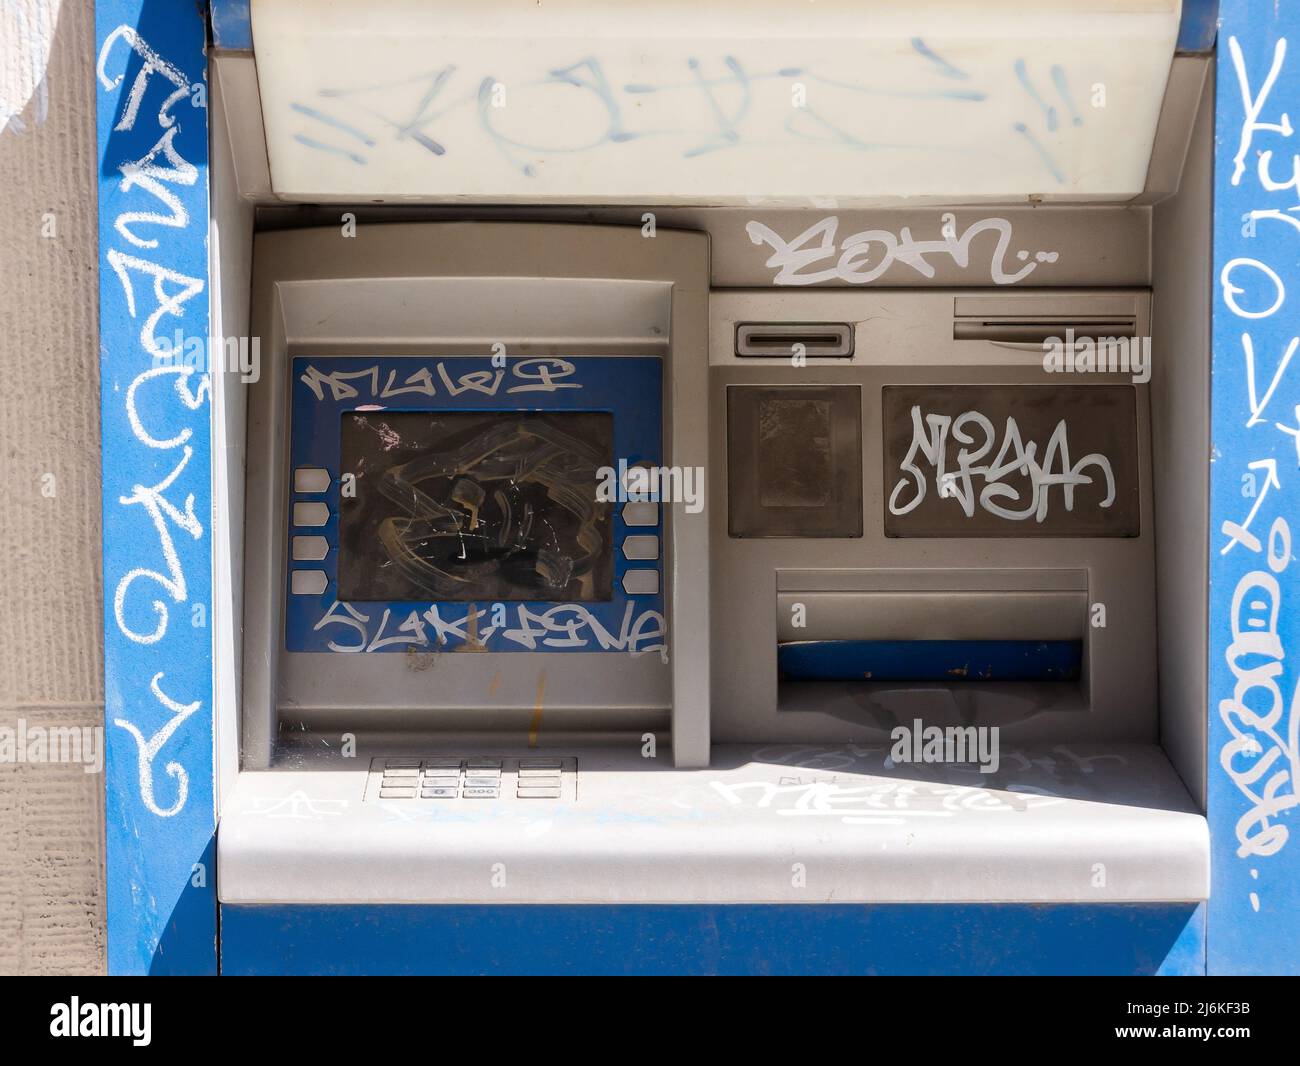 Vecchio danneggiato distrusse bancomat all'aperto vandalizzato, dettaglio bancomat vandalizzato, primo piano. Crisi economica, recessione finanziaria, rivolte, business globale Foto Stock